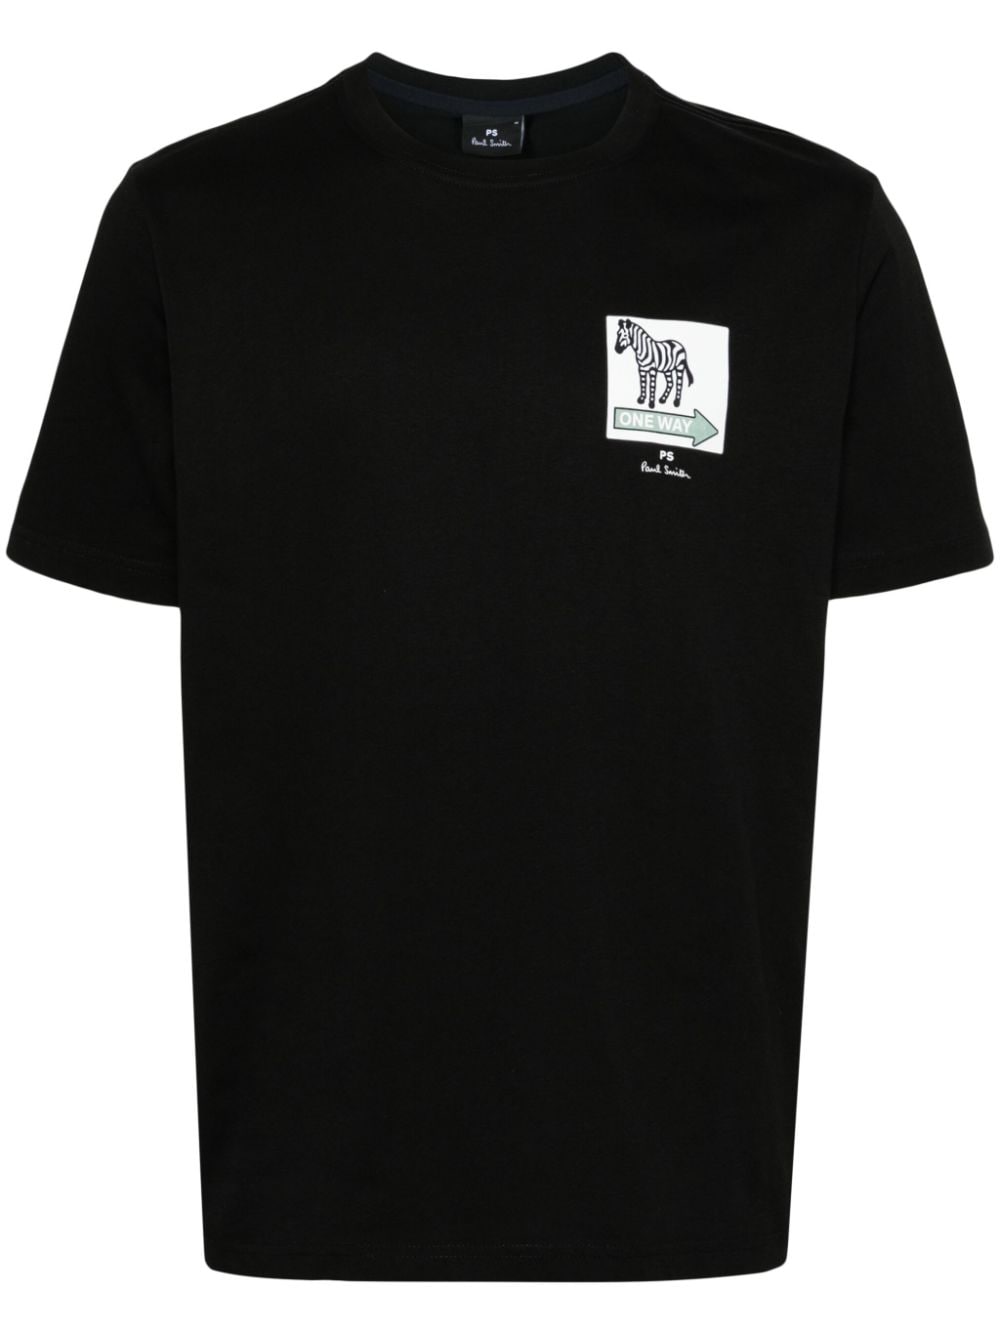 PS Paul Smith One Way Zebra T-Shirt mit grafischem Print - Schwarz von PS Paul Smith